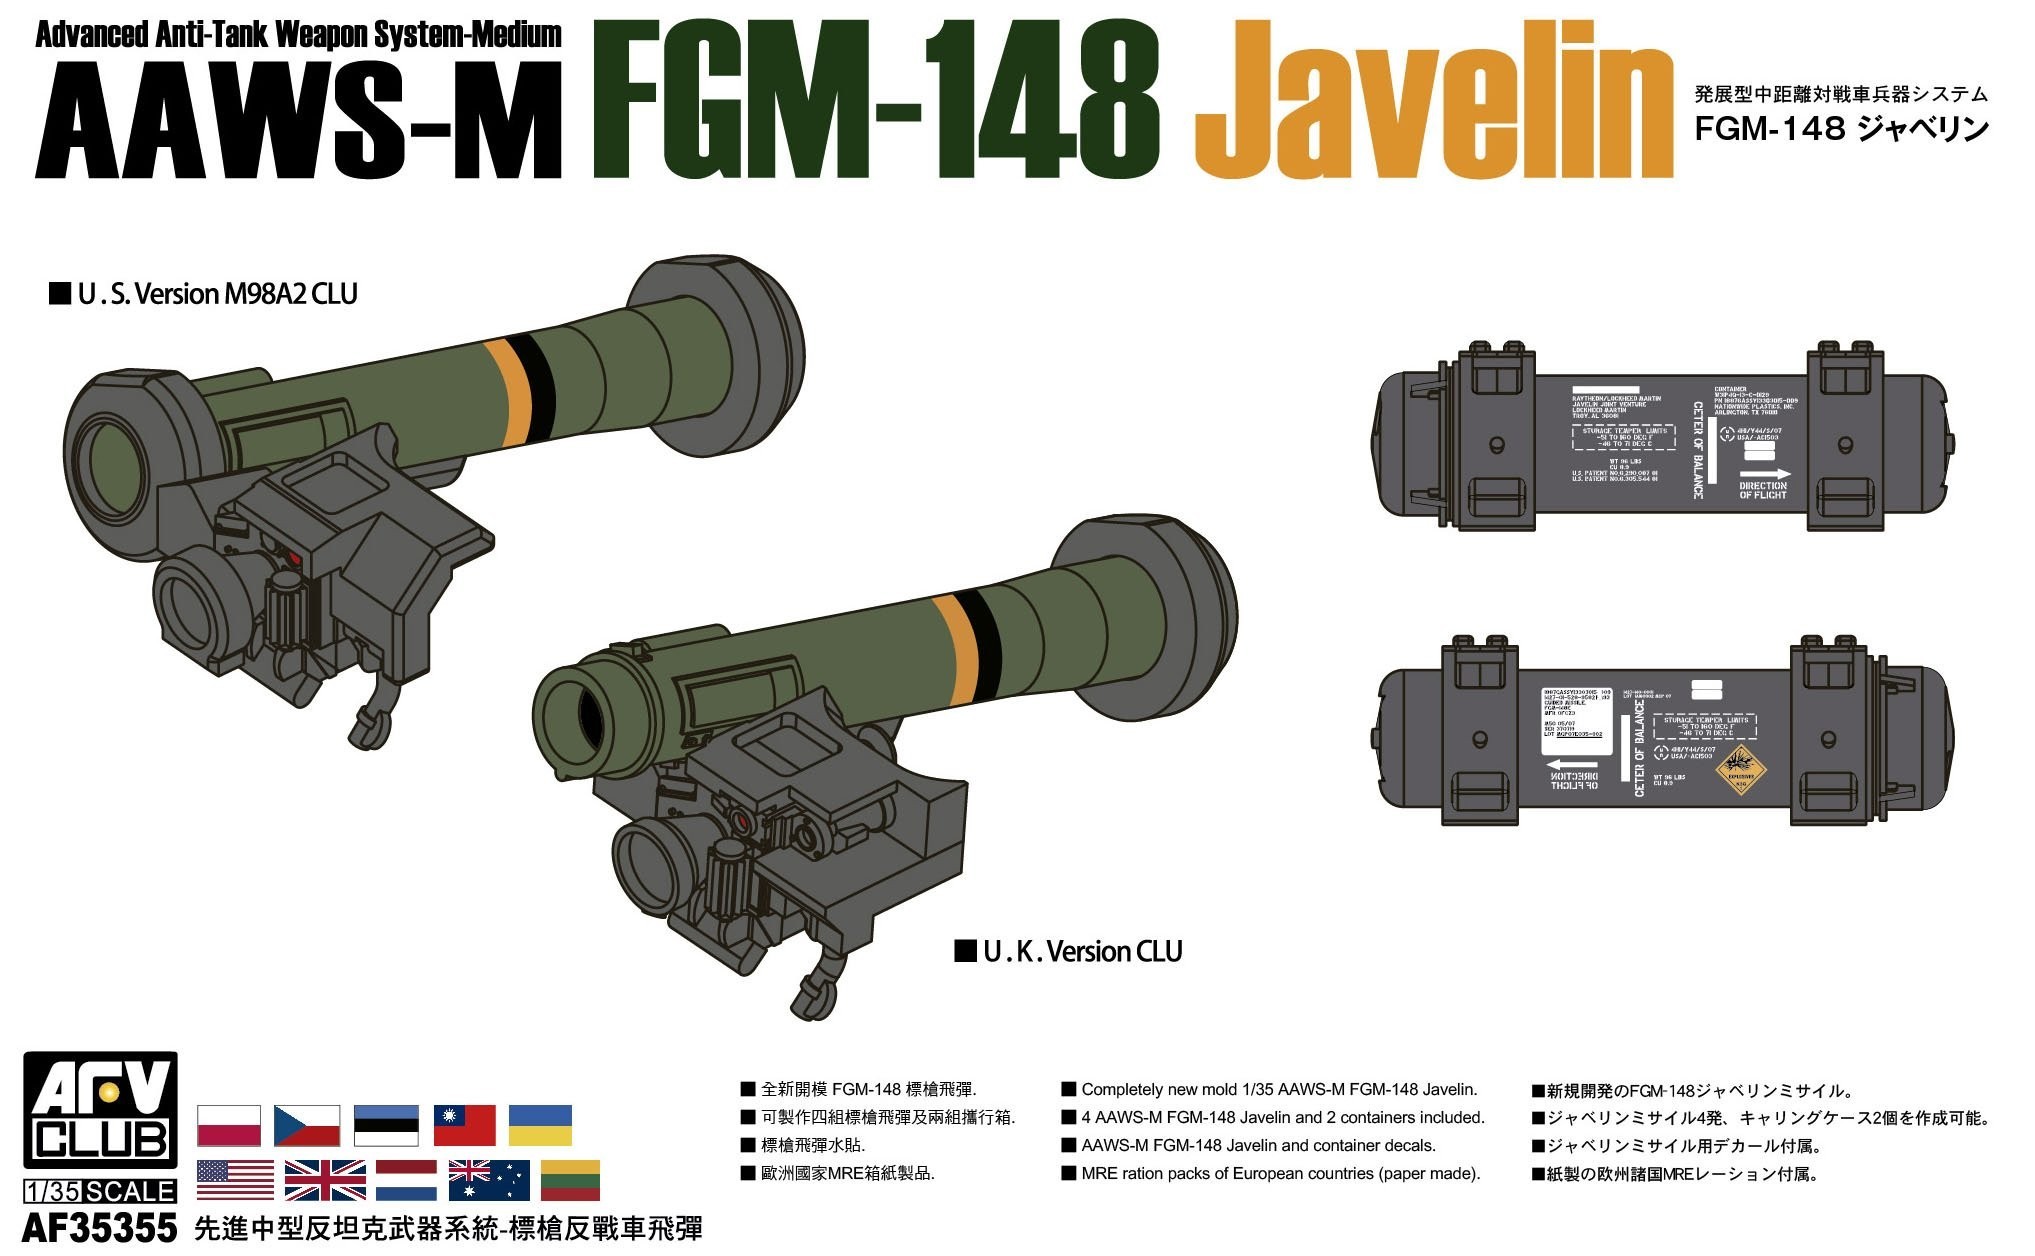 AF35355 1/35 AAWS-M FGM-148 Javelin